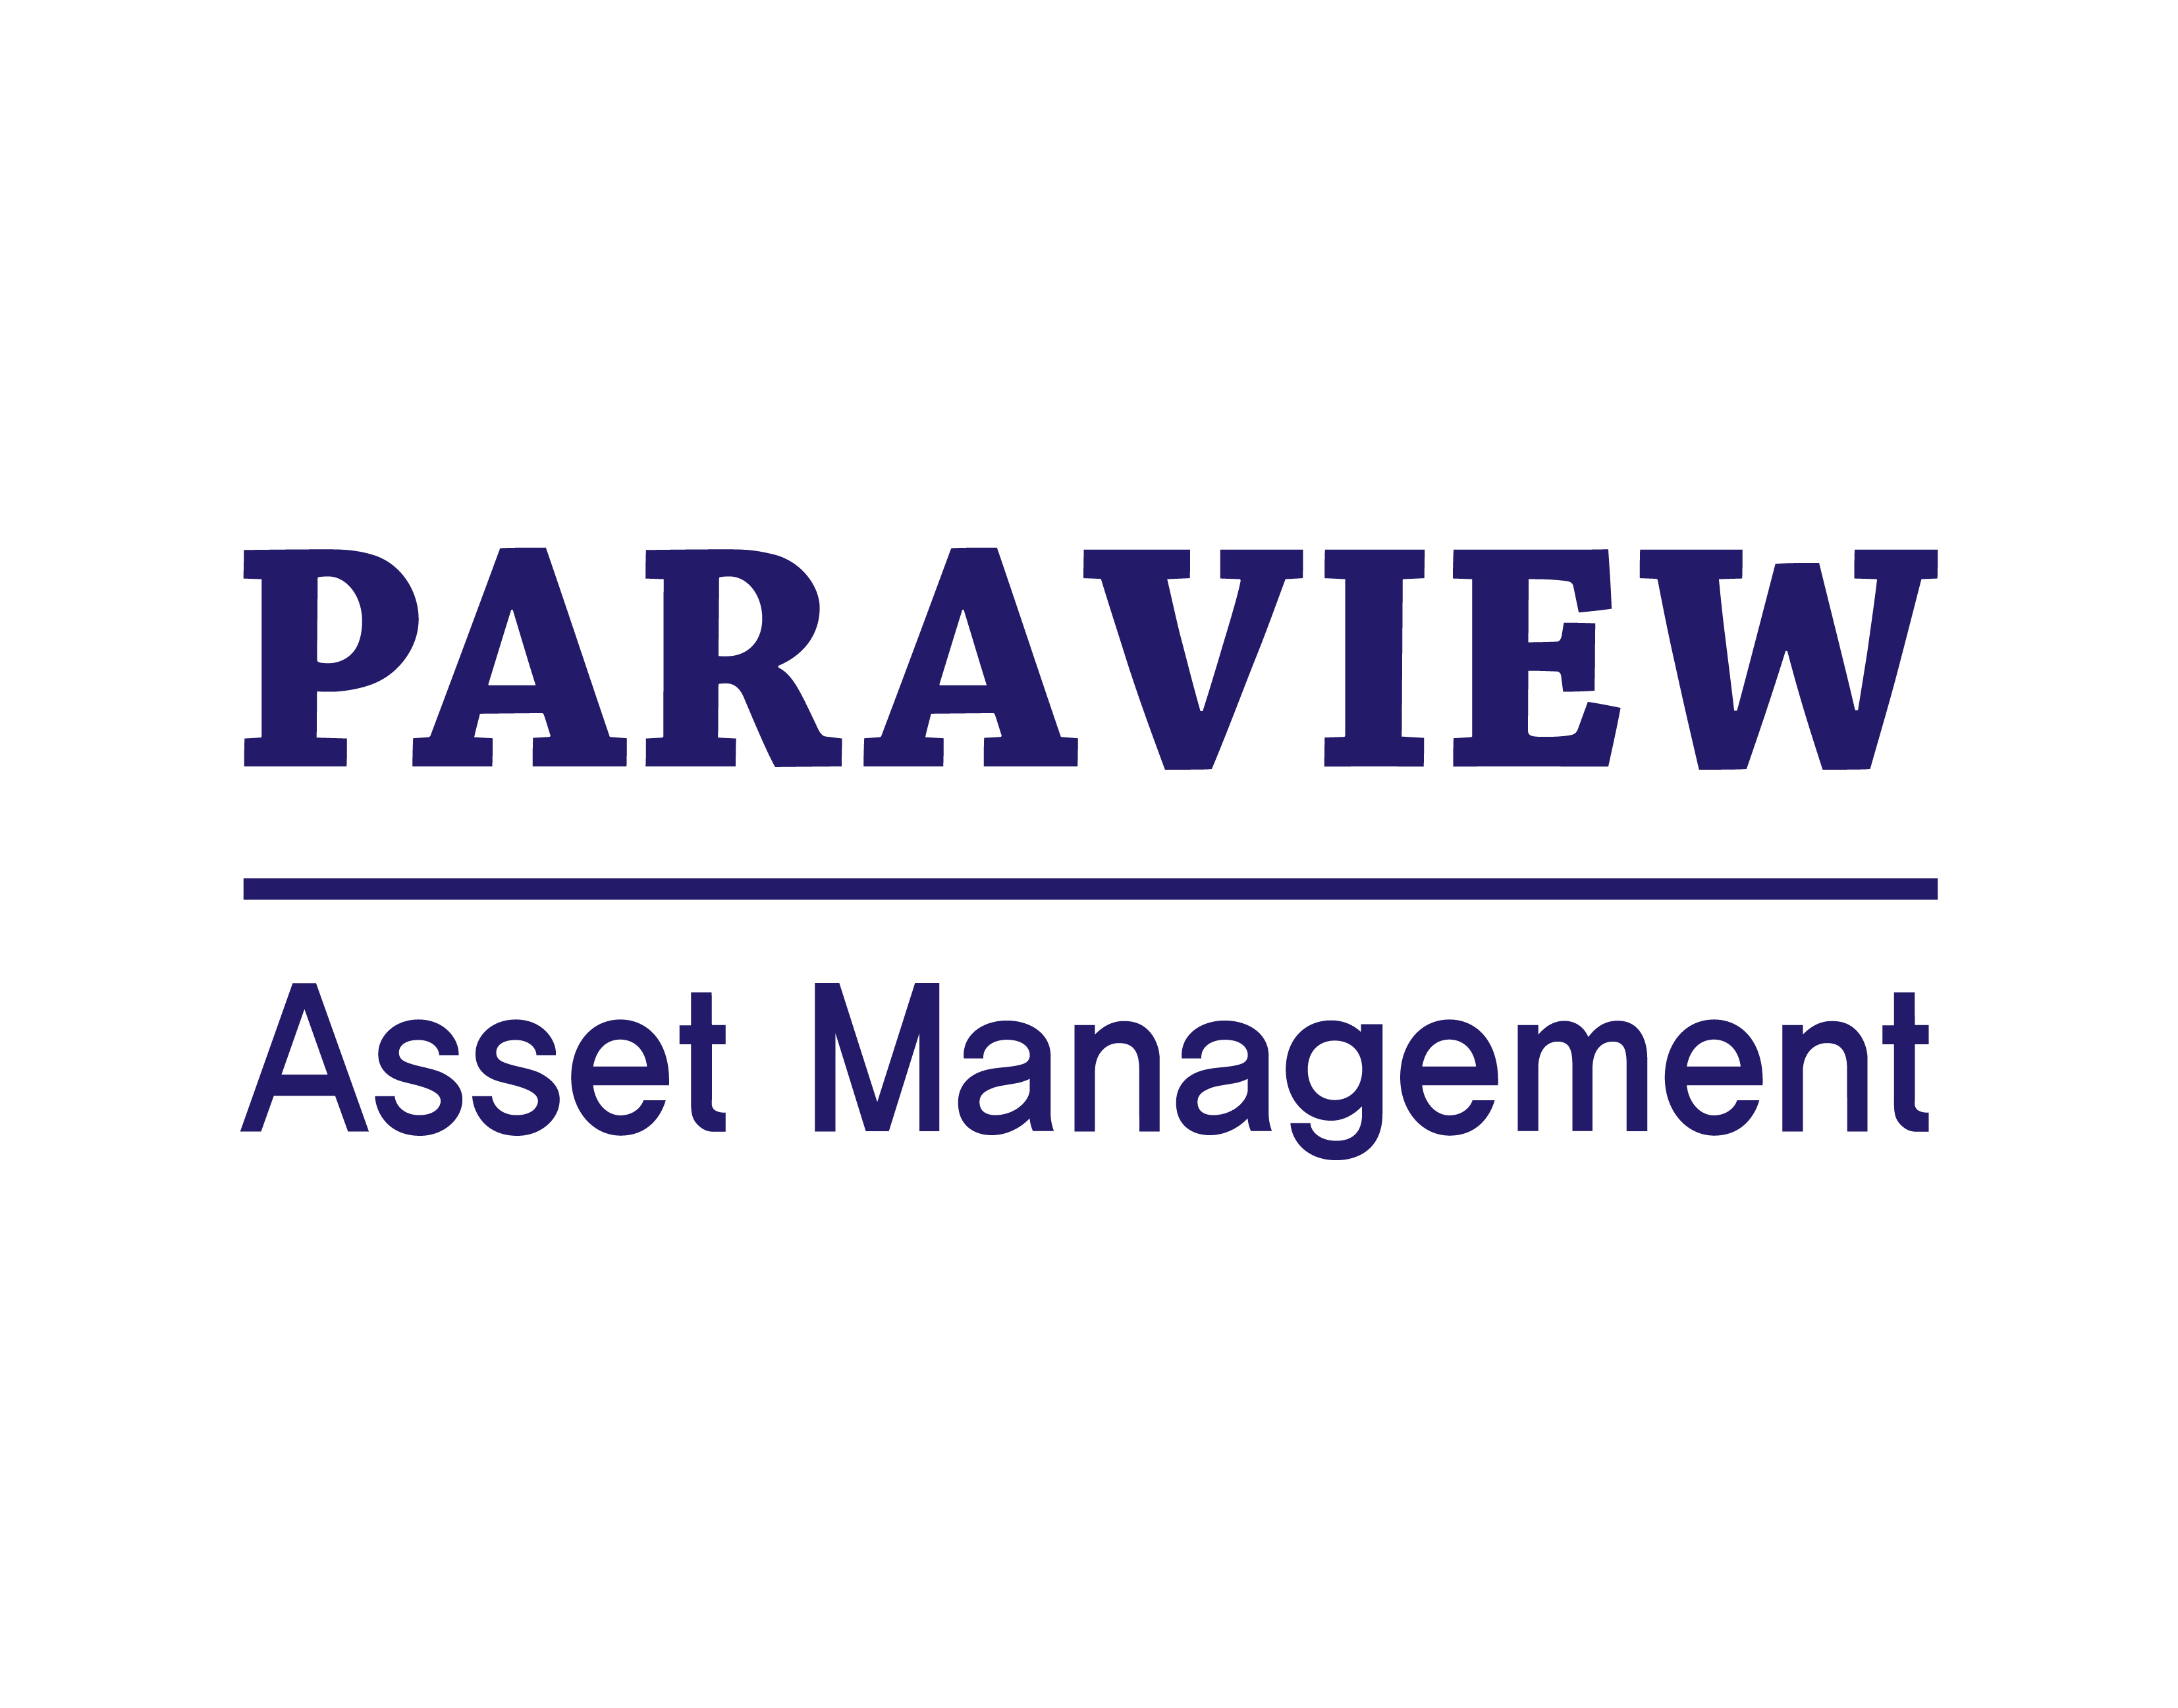 paraview Asset Management Co., Ltd.